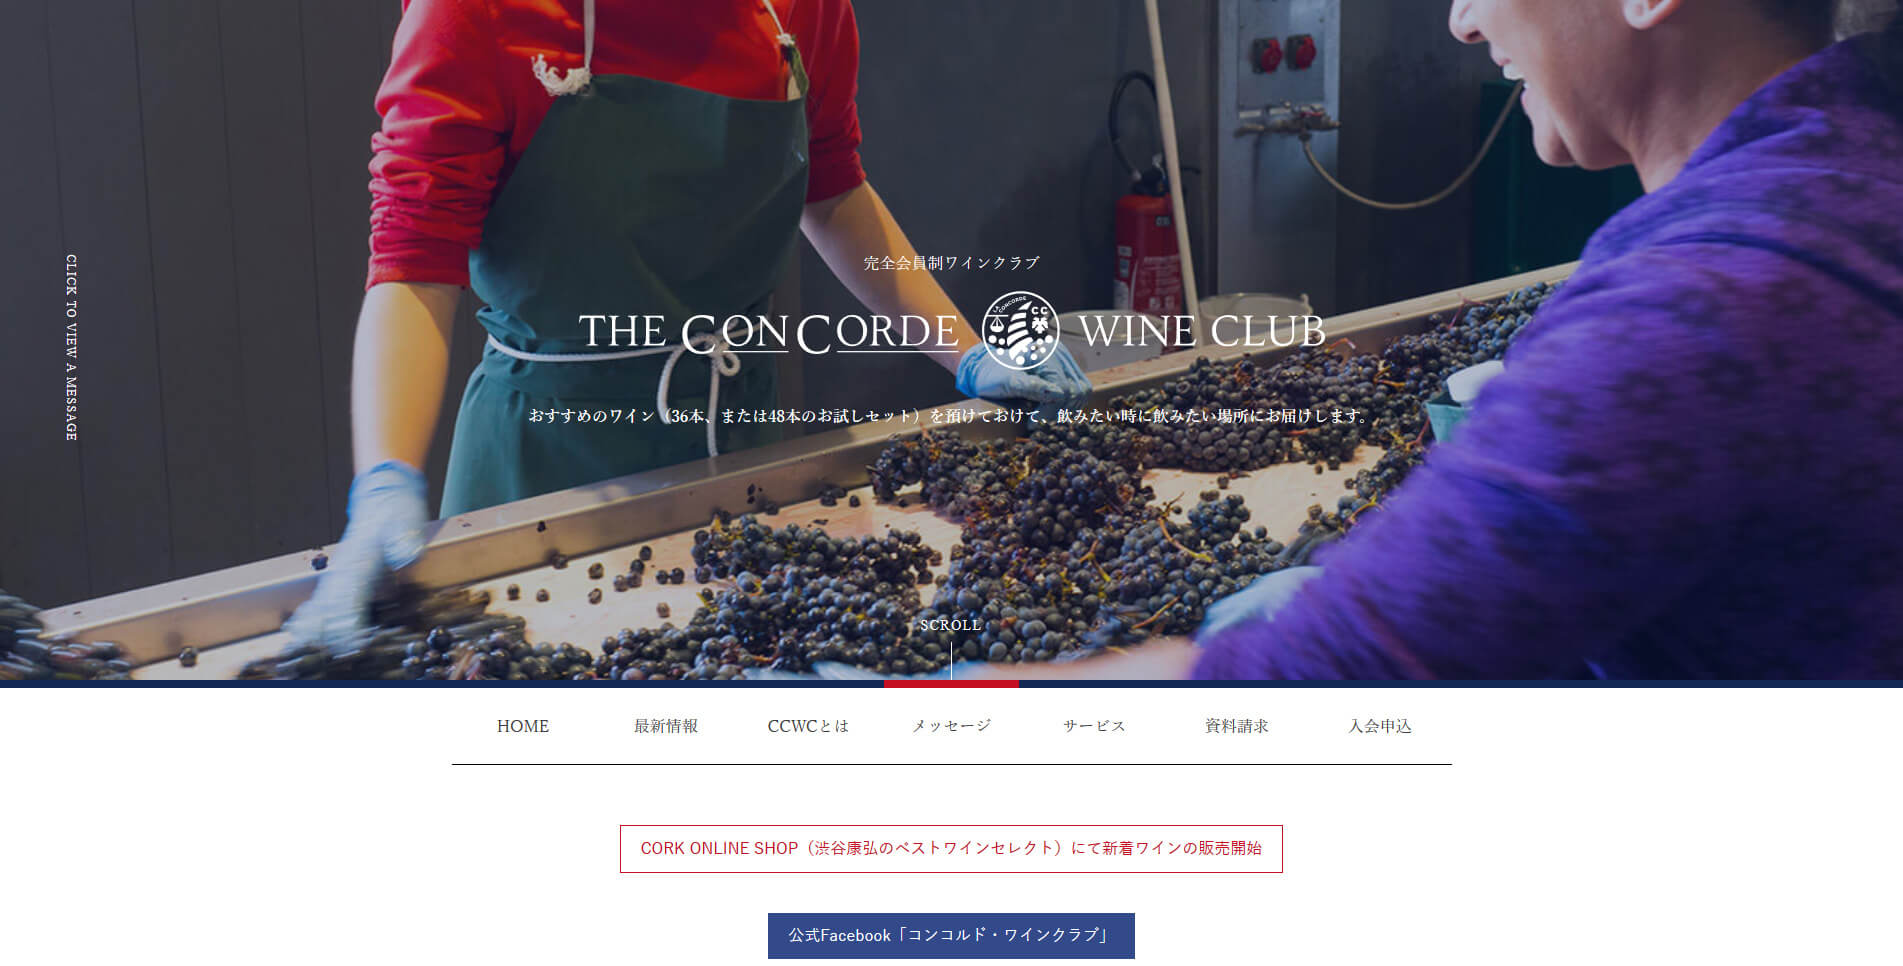 THE CONCORDE WINE CLUB